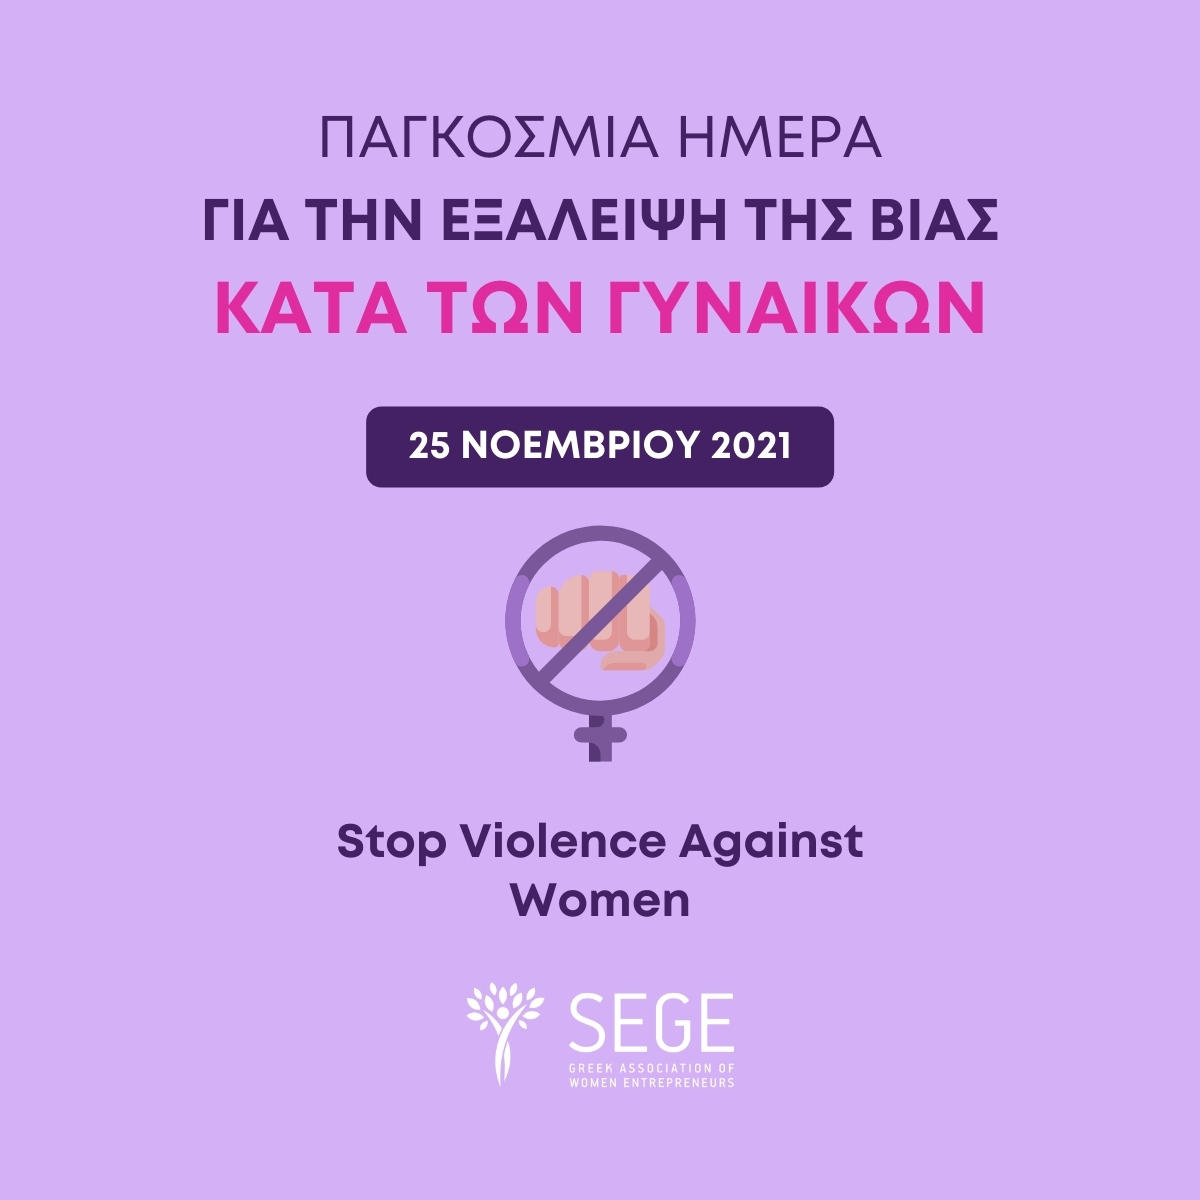 ΣΕΓΕ: Μήνυμα για την Παγκόσμια Ημέρα για την εξάλειψη της βίας κατά των γυναικών